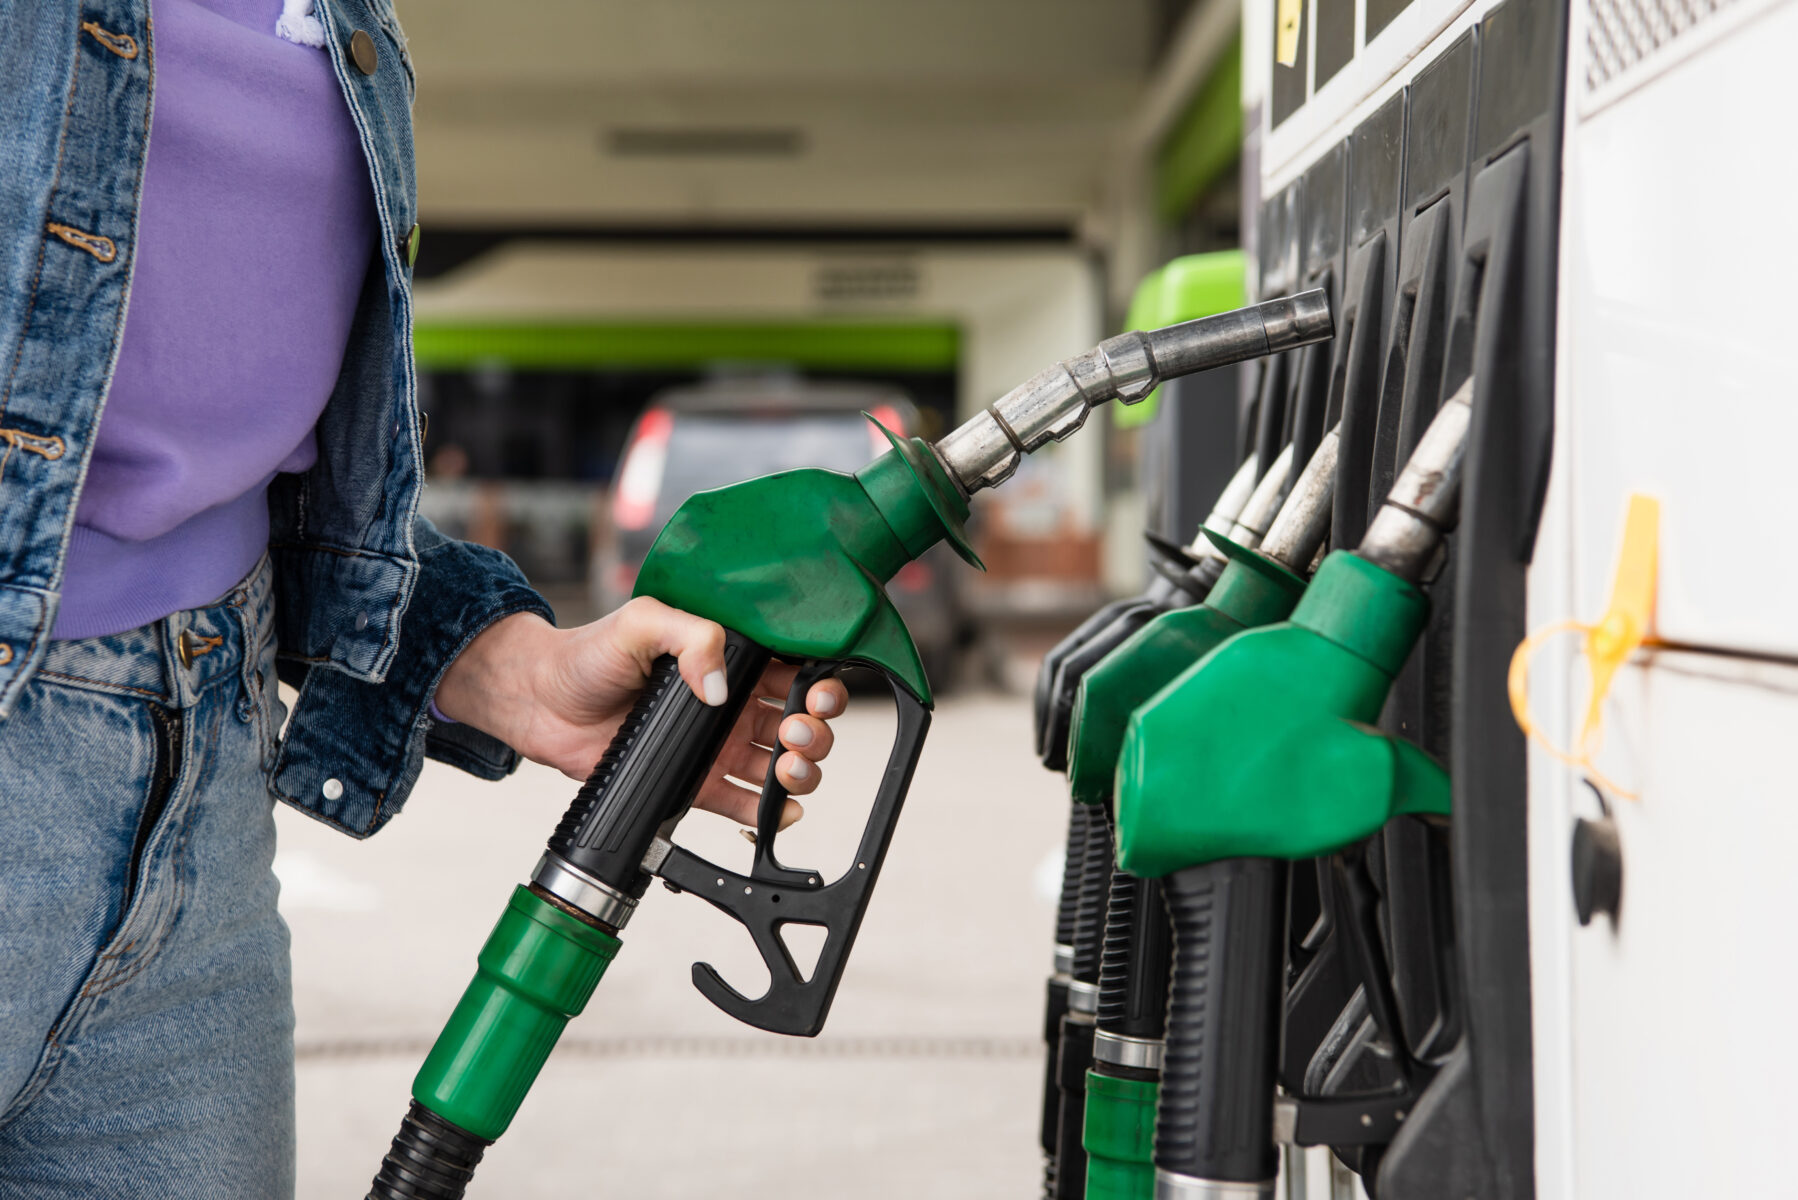 El precio de la gasolina sigue a la alza en Estados Unidos. | Foto: <a href=https://depositphotos.com/ title=Depositphotos>Depositphotos</a>